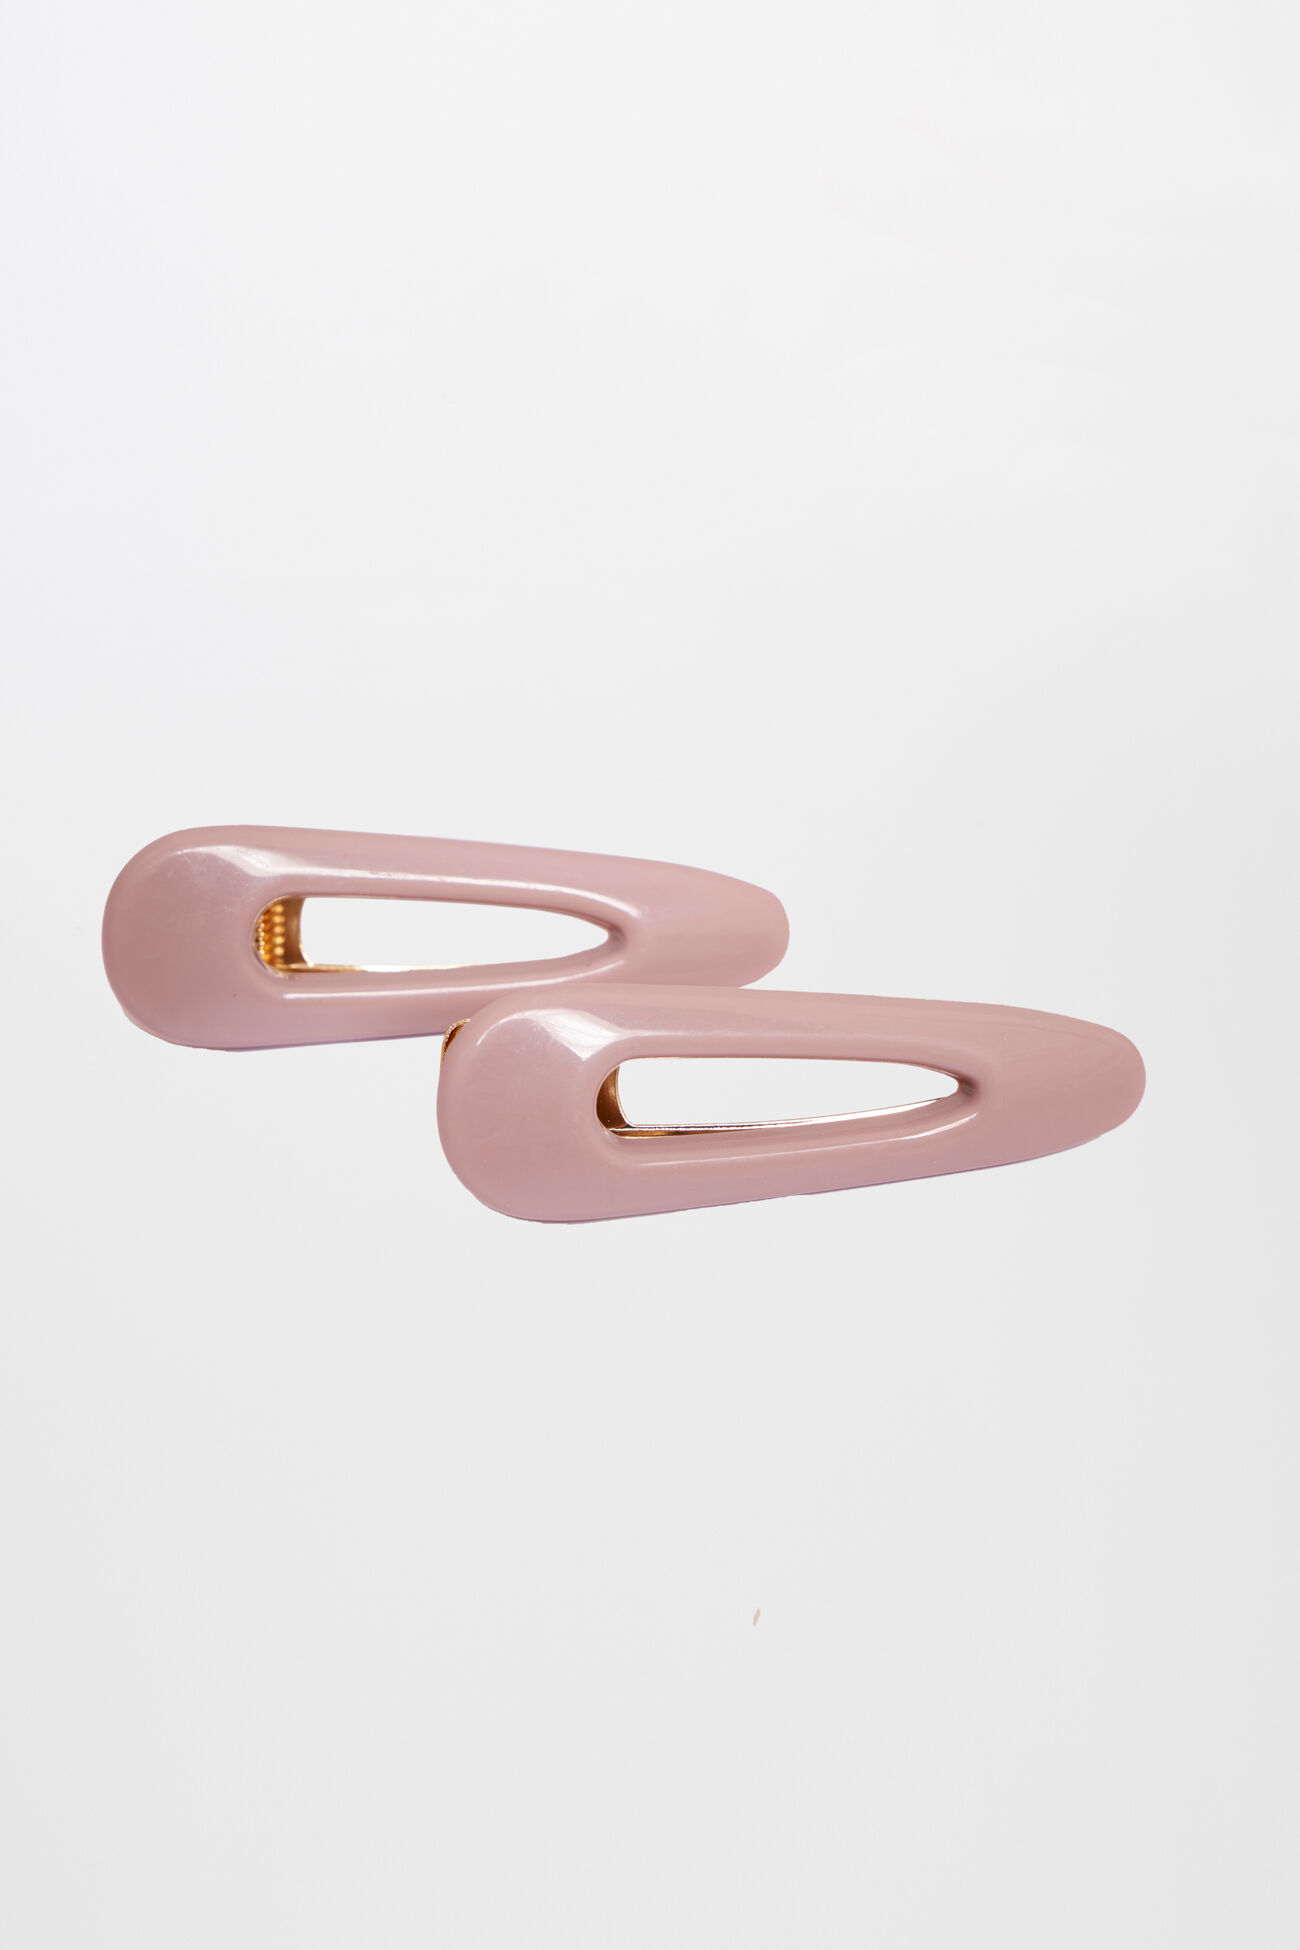 1 - Light Pink Hairpin, image 1